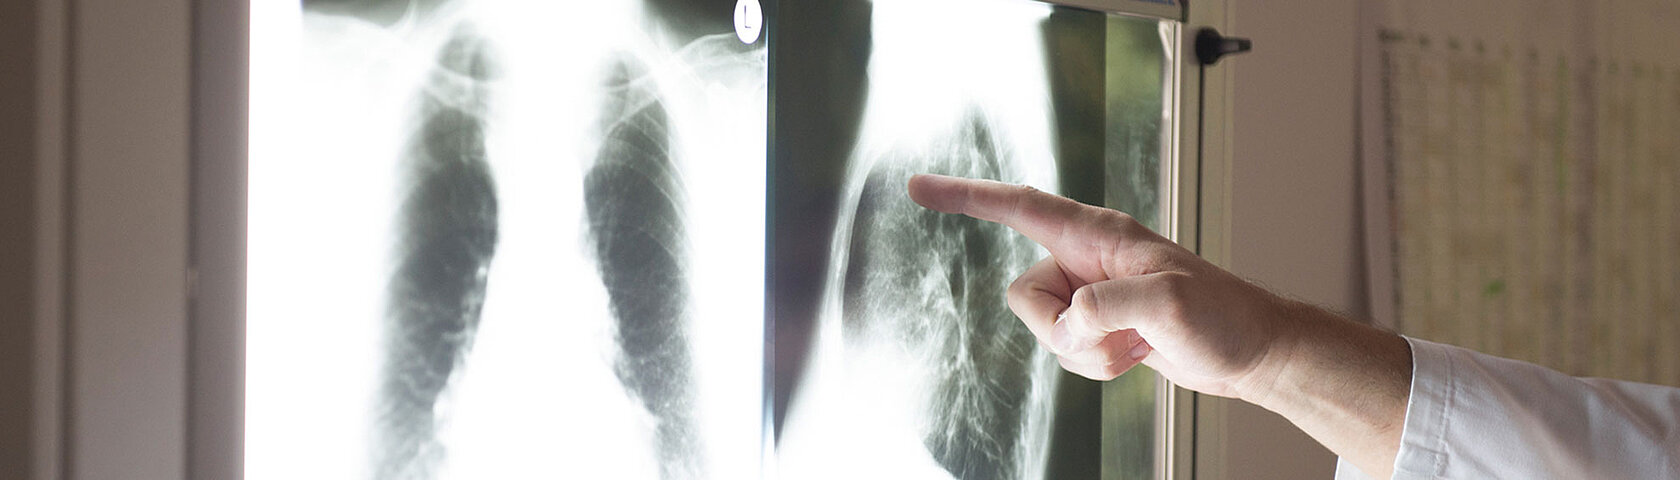 Diagnostik Finger zeigt auf Röntgenbild KfN München